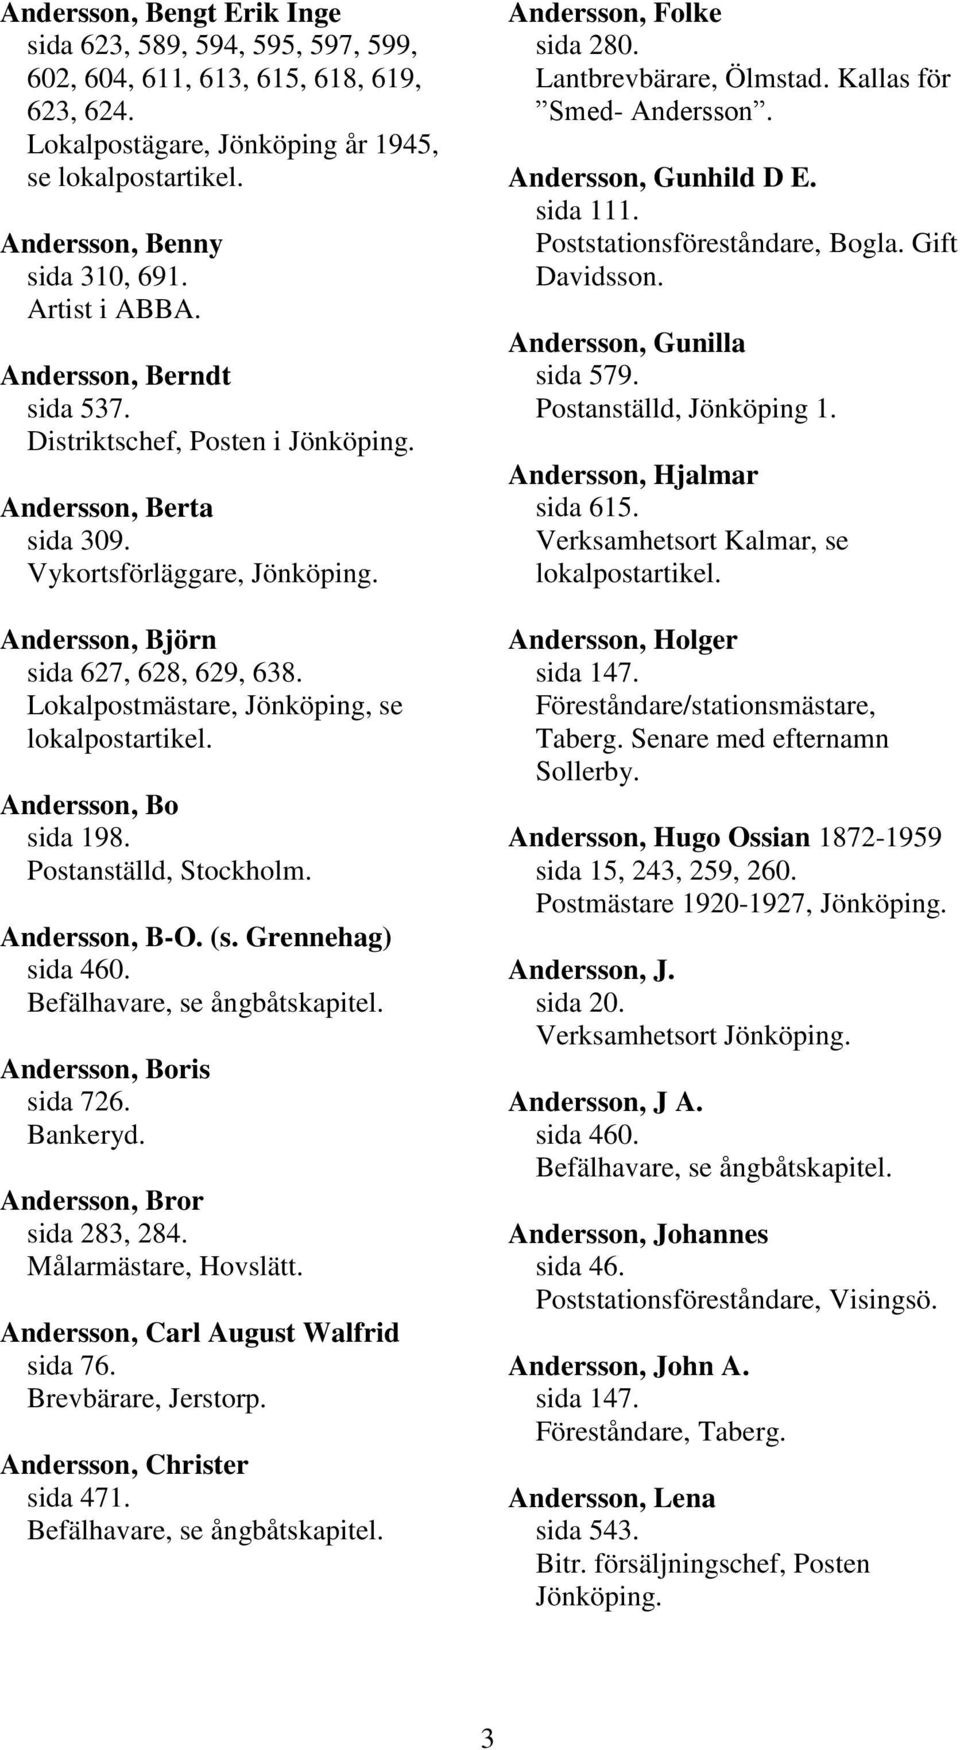 Lokalpostmästare, Jönköping, se lokalpostartikel. Andersson, Bo sida 198. Postanställd, Stockholm. Andersson, B-O. (s. Grennehag) sida 460. Andersson, Boris sida 726. Bankeryd.